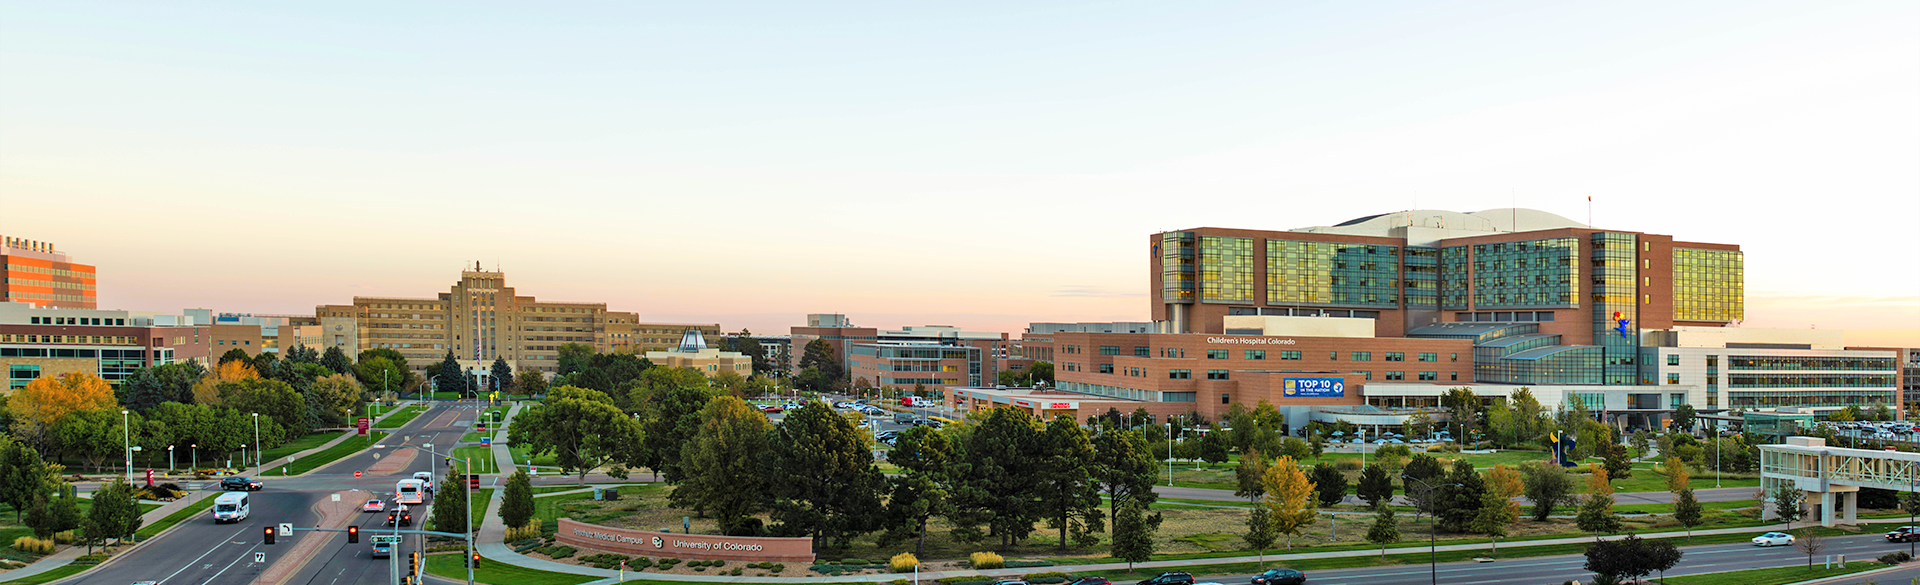 CU Anschutz Medical Campus